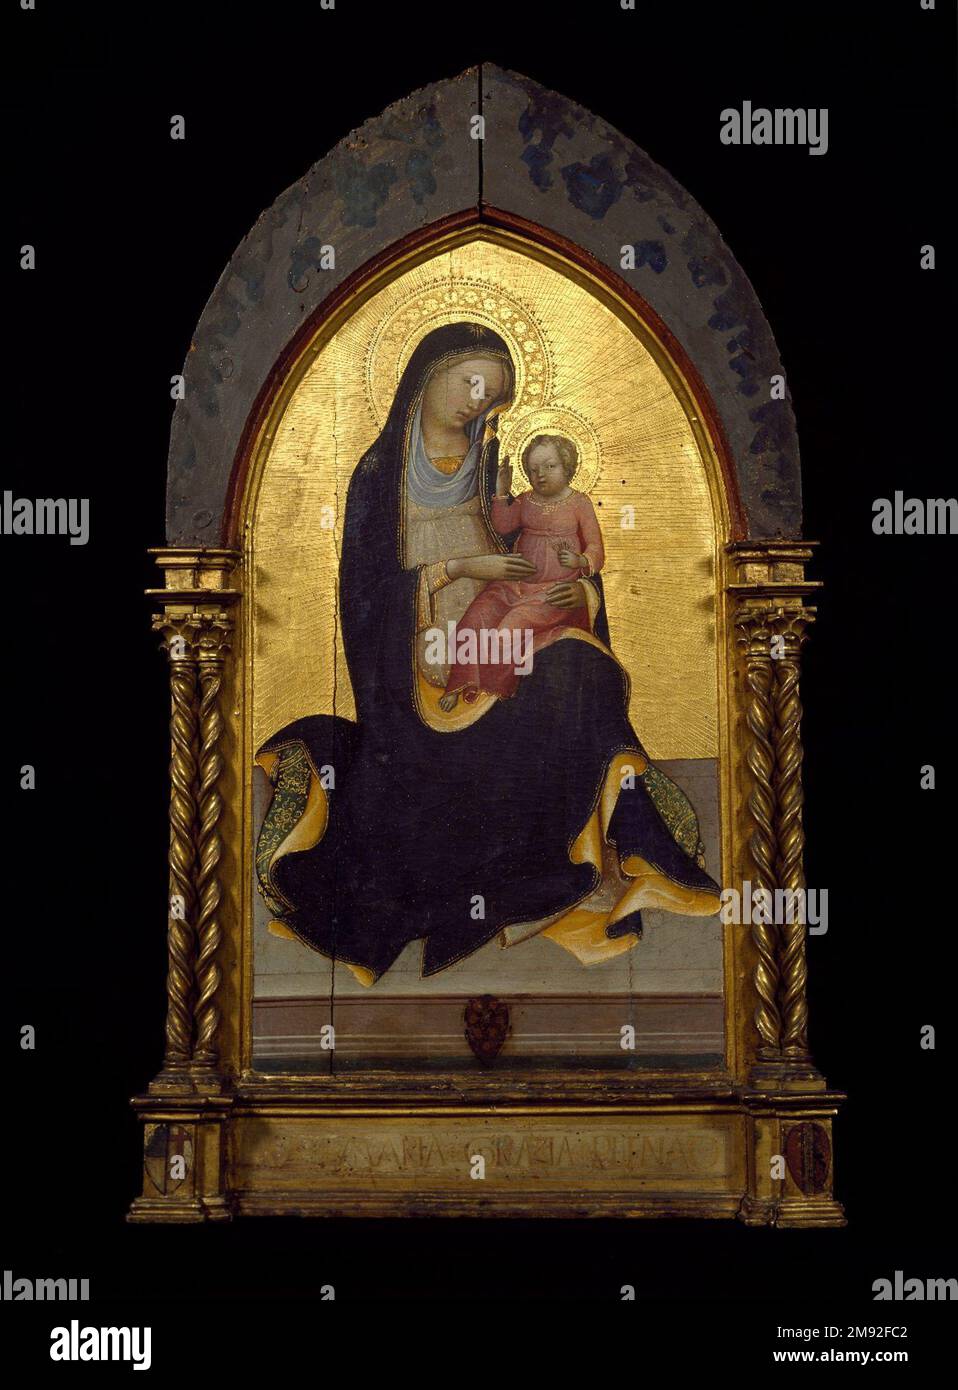 Madonna der Bescheidenheit Lorenzo Monaco (Italienisch, Schule von Florenz, ca. 1370/71-1424). , Ca. 1415-1420. Blech mit eingerastetem Rahmen, Tempera und Werkzeuggold, 33 1/4 x 18 7/8 Zoll (84,5 x 47,9 cm). Nach der mittelalterlichen Theologie war Demut die Quelle aller Tugenden, eine angemessene Metapher für Maria als Mutter Gottes. In Lorenzo Monacos ergebenem Gemälde wird Mary als die Madonna der Demut dargestellt, die nicht auf dem Thron sitzt, sondern auf einem Kissen auf einem Marmorpflaster ruht. Solche Bilder waren in Florenz sehr gefragt, und Monaco machte mehrere ähnliche Versionen dieser Komposition, wahrscheinlich für Stockfoto